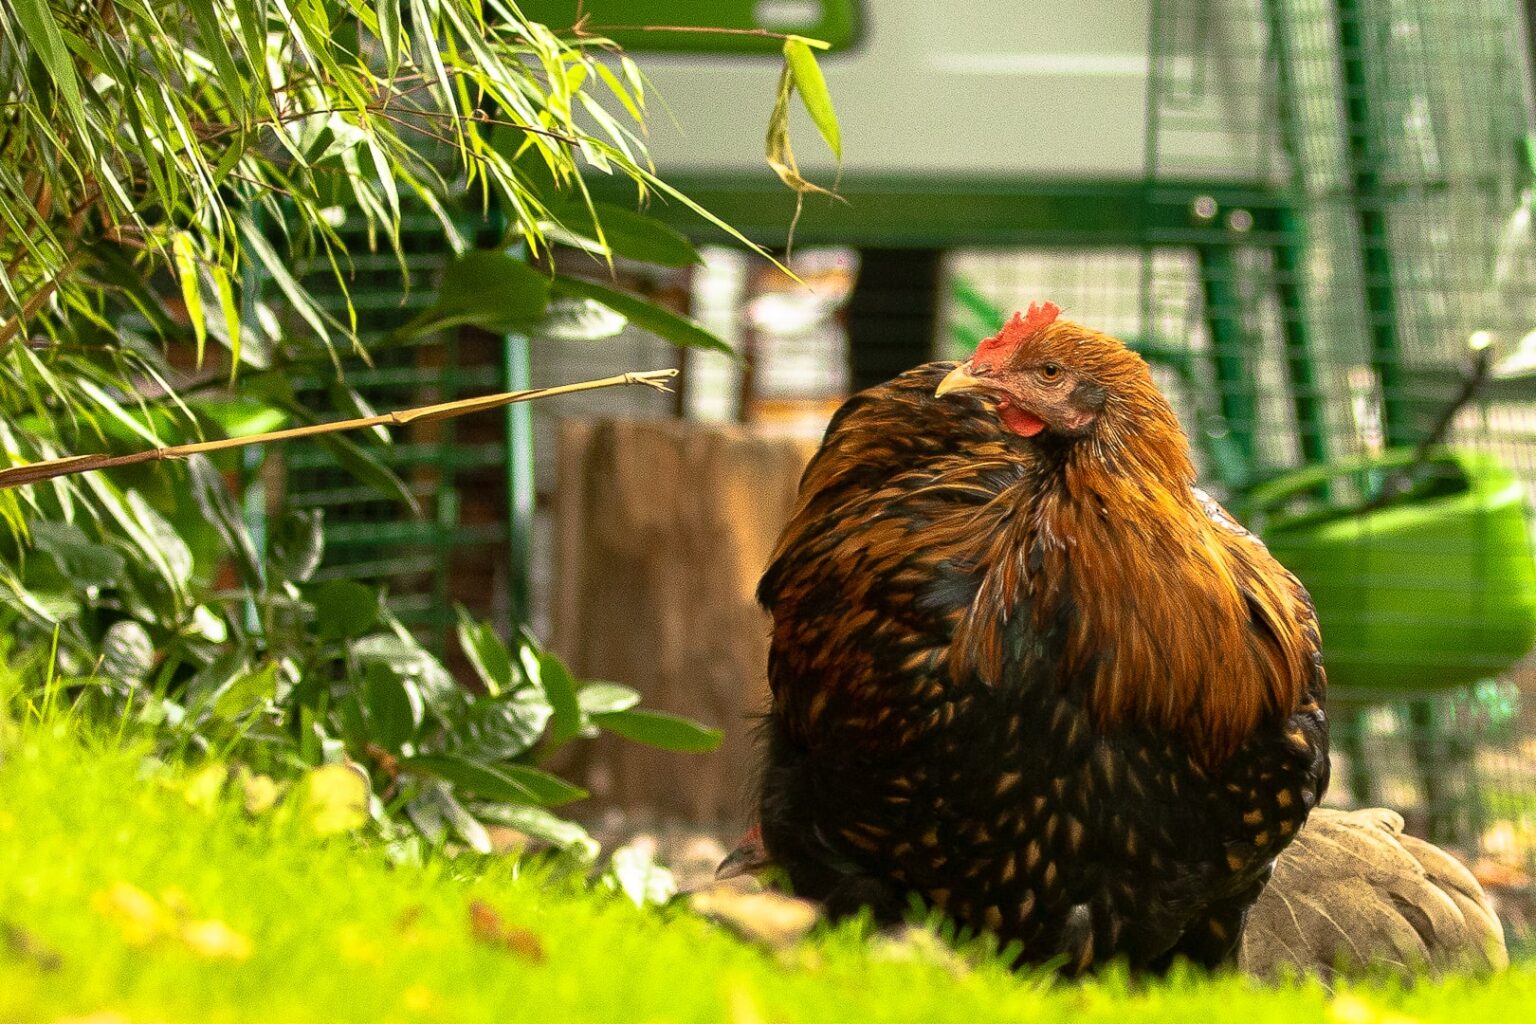 Laster Actief Zes Hoe weet ik welke kippen eieren leggen? - Omlet Blog NL